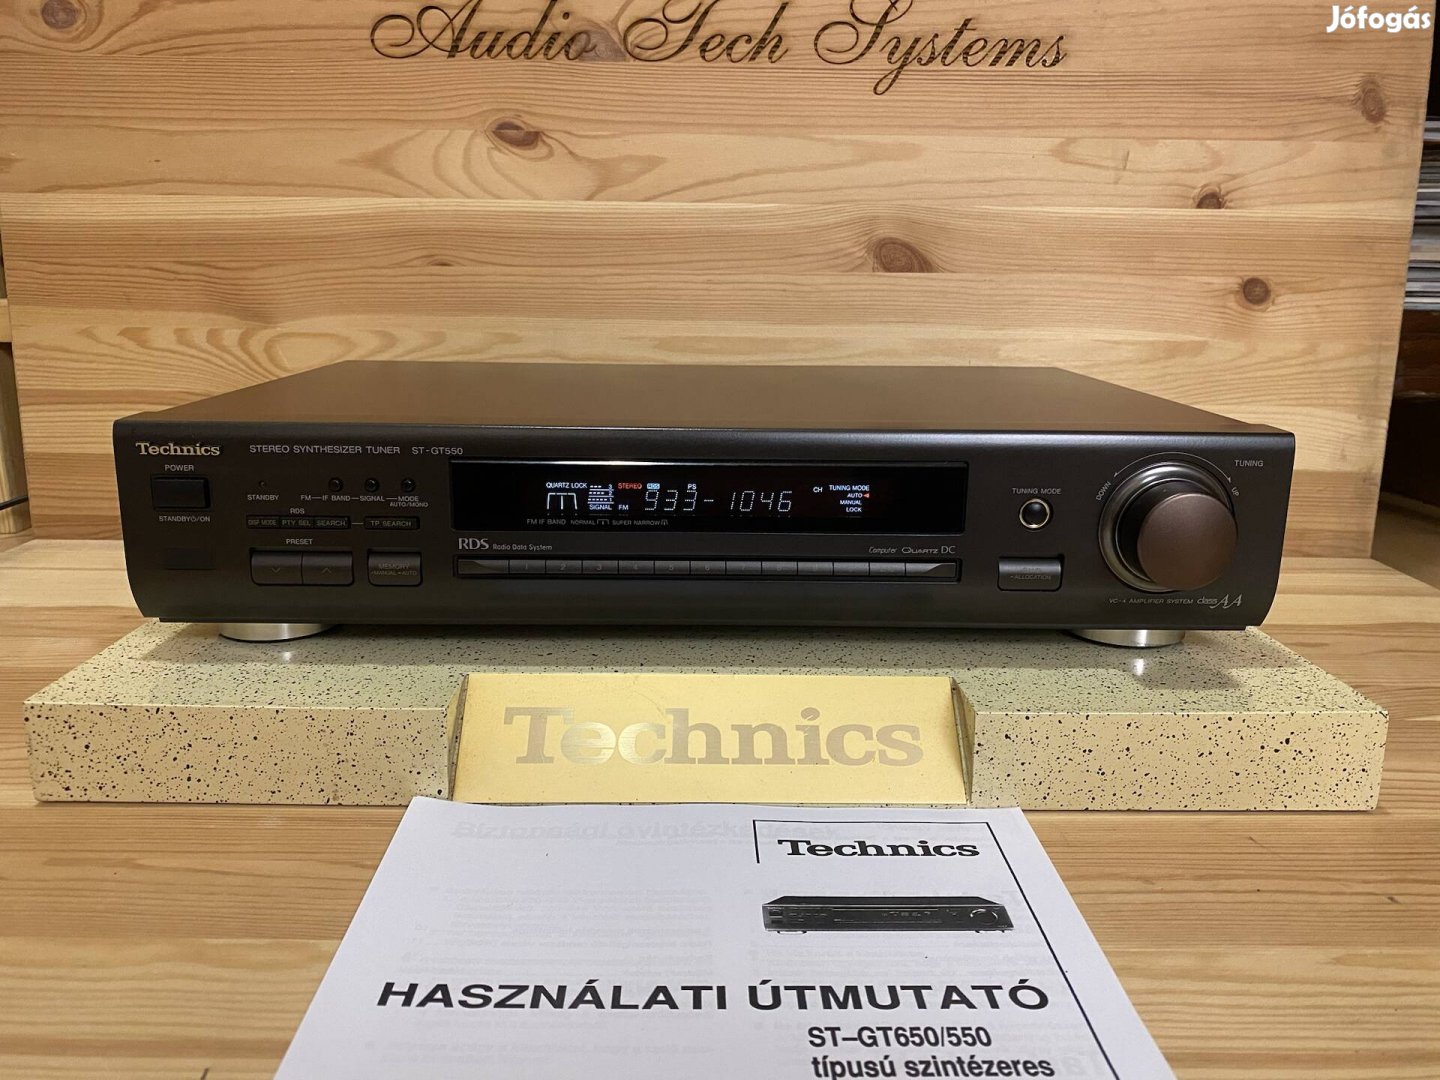 Technics ST-GT550 RDS-s hifi sztereó rádió tuner